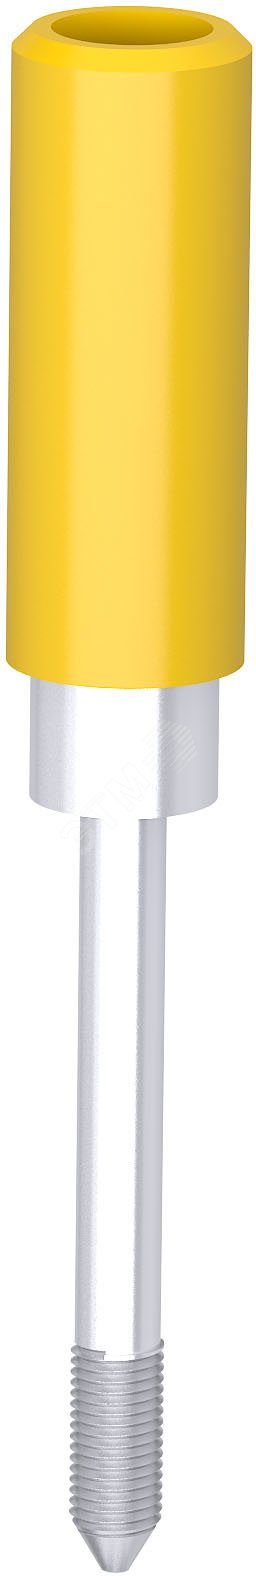 Гнездо тестовое STI4-Y диаметр 4мм желтое 1SNL900201R0000 ABB